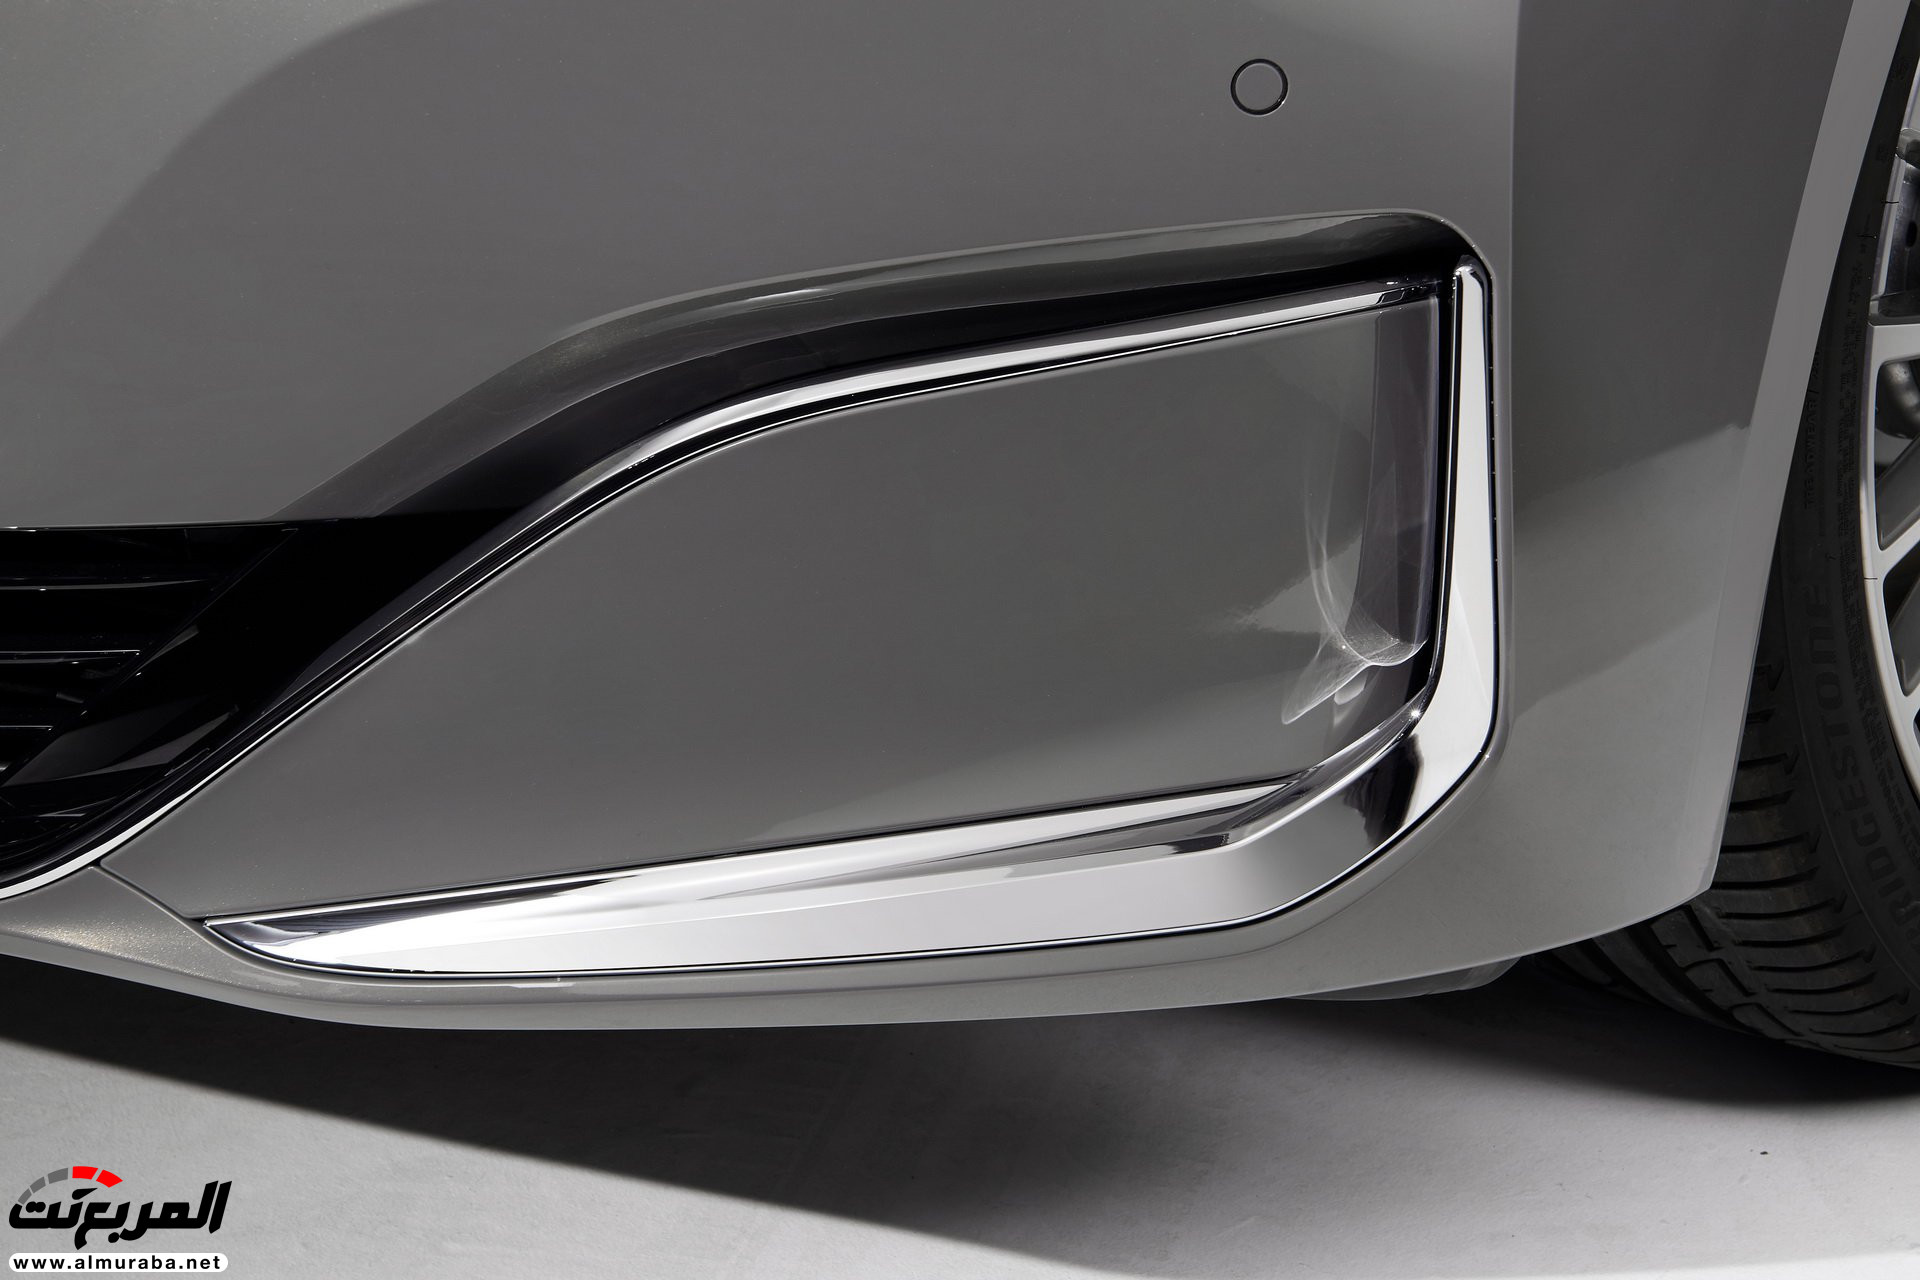 بي ام دبليو الفئة السابعة 2020 المحدثة تكشف نفسها رسمياً "صور ومواصفات" BMW 7 Series 297